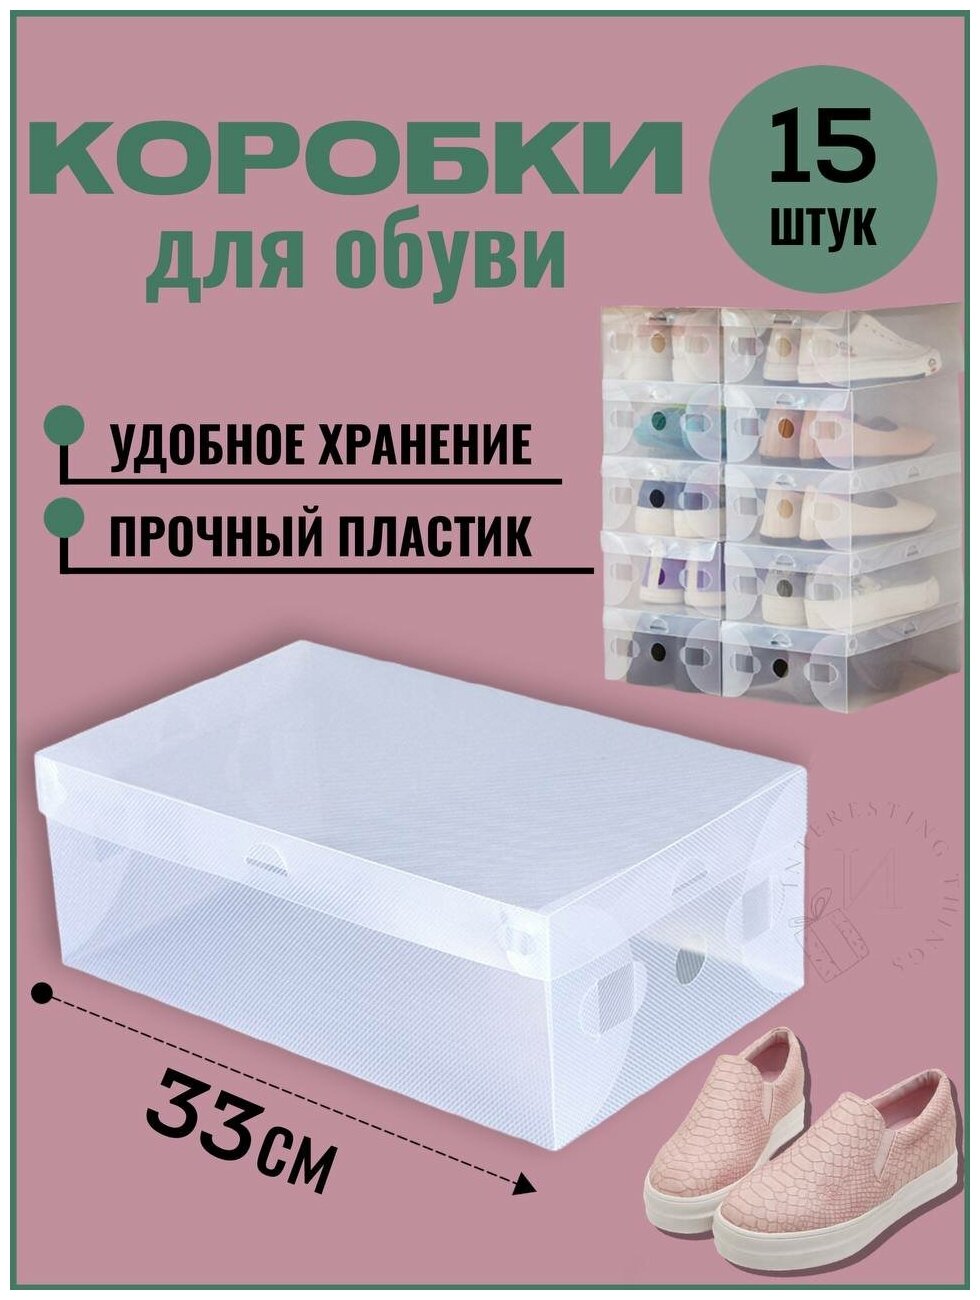 Коробки для хранения обуви пластиковые набор пластиковых прозрачных коробок для обуви органайзеры система хранения 15 шт 33х20х12 см